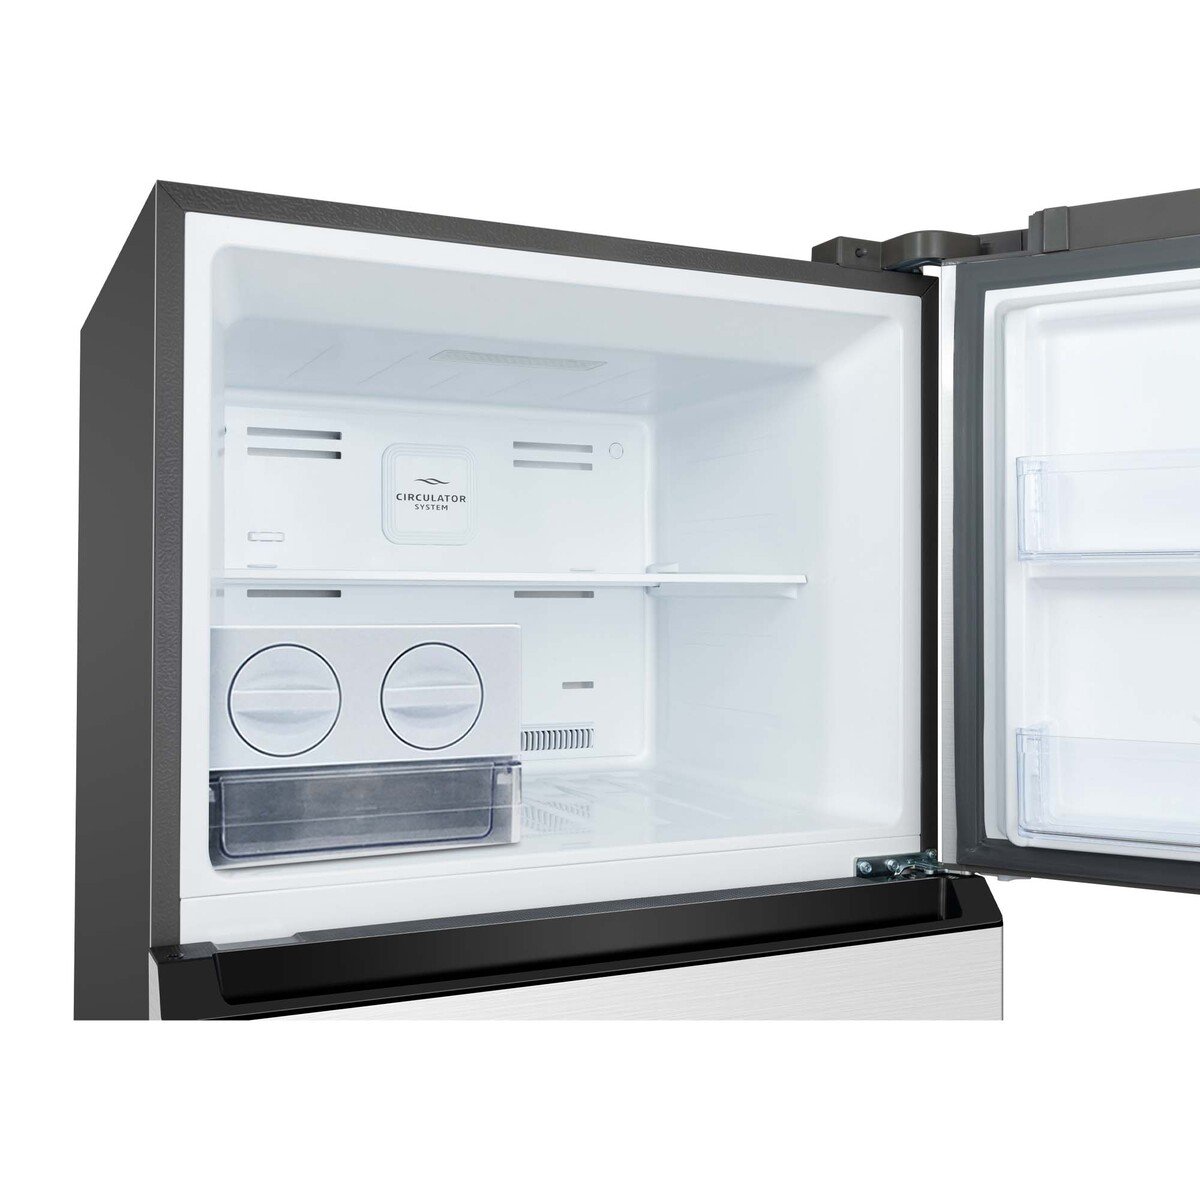 TCL Double Door Refrigerator, 550 L, Inox, P550TMN